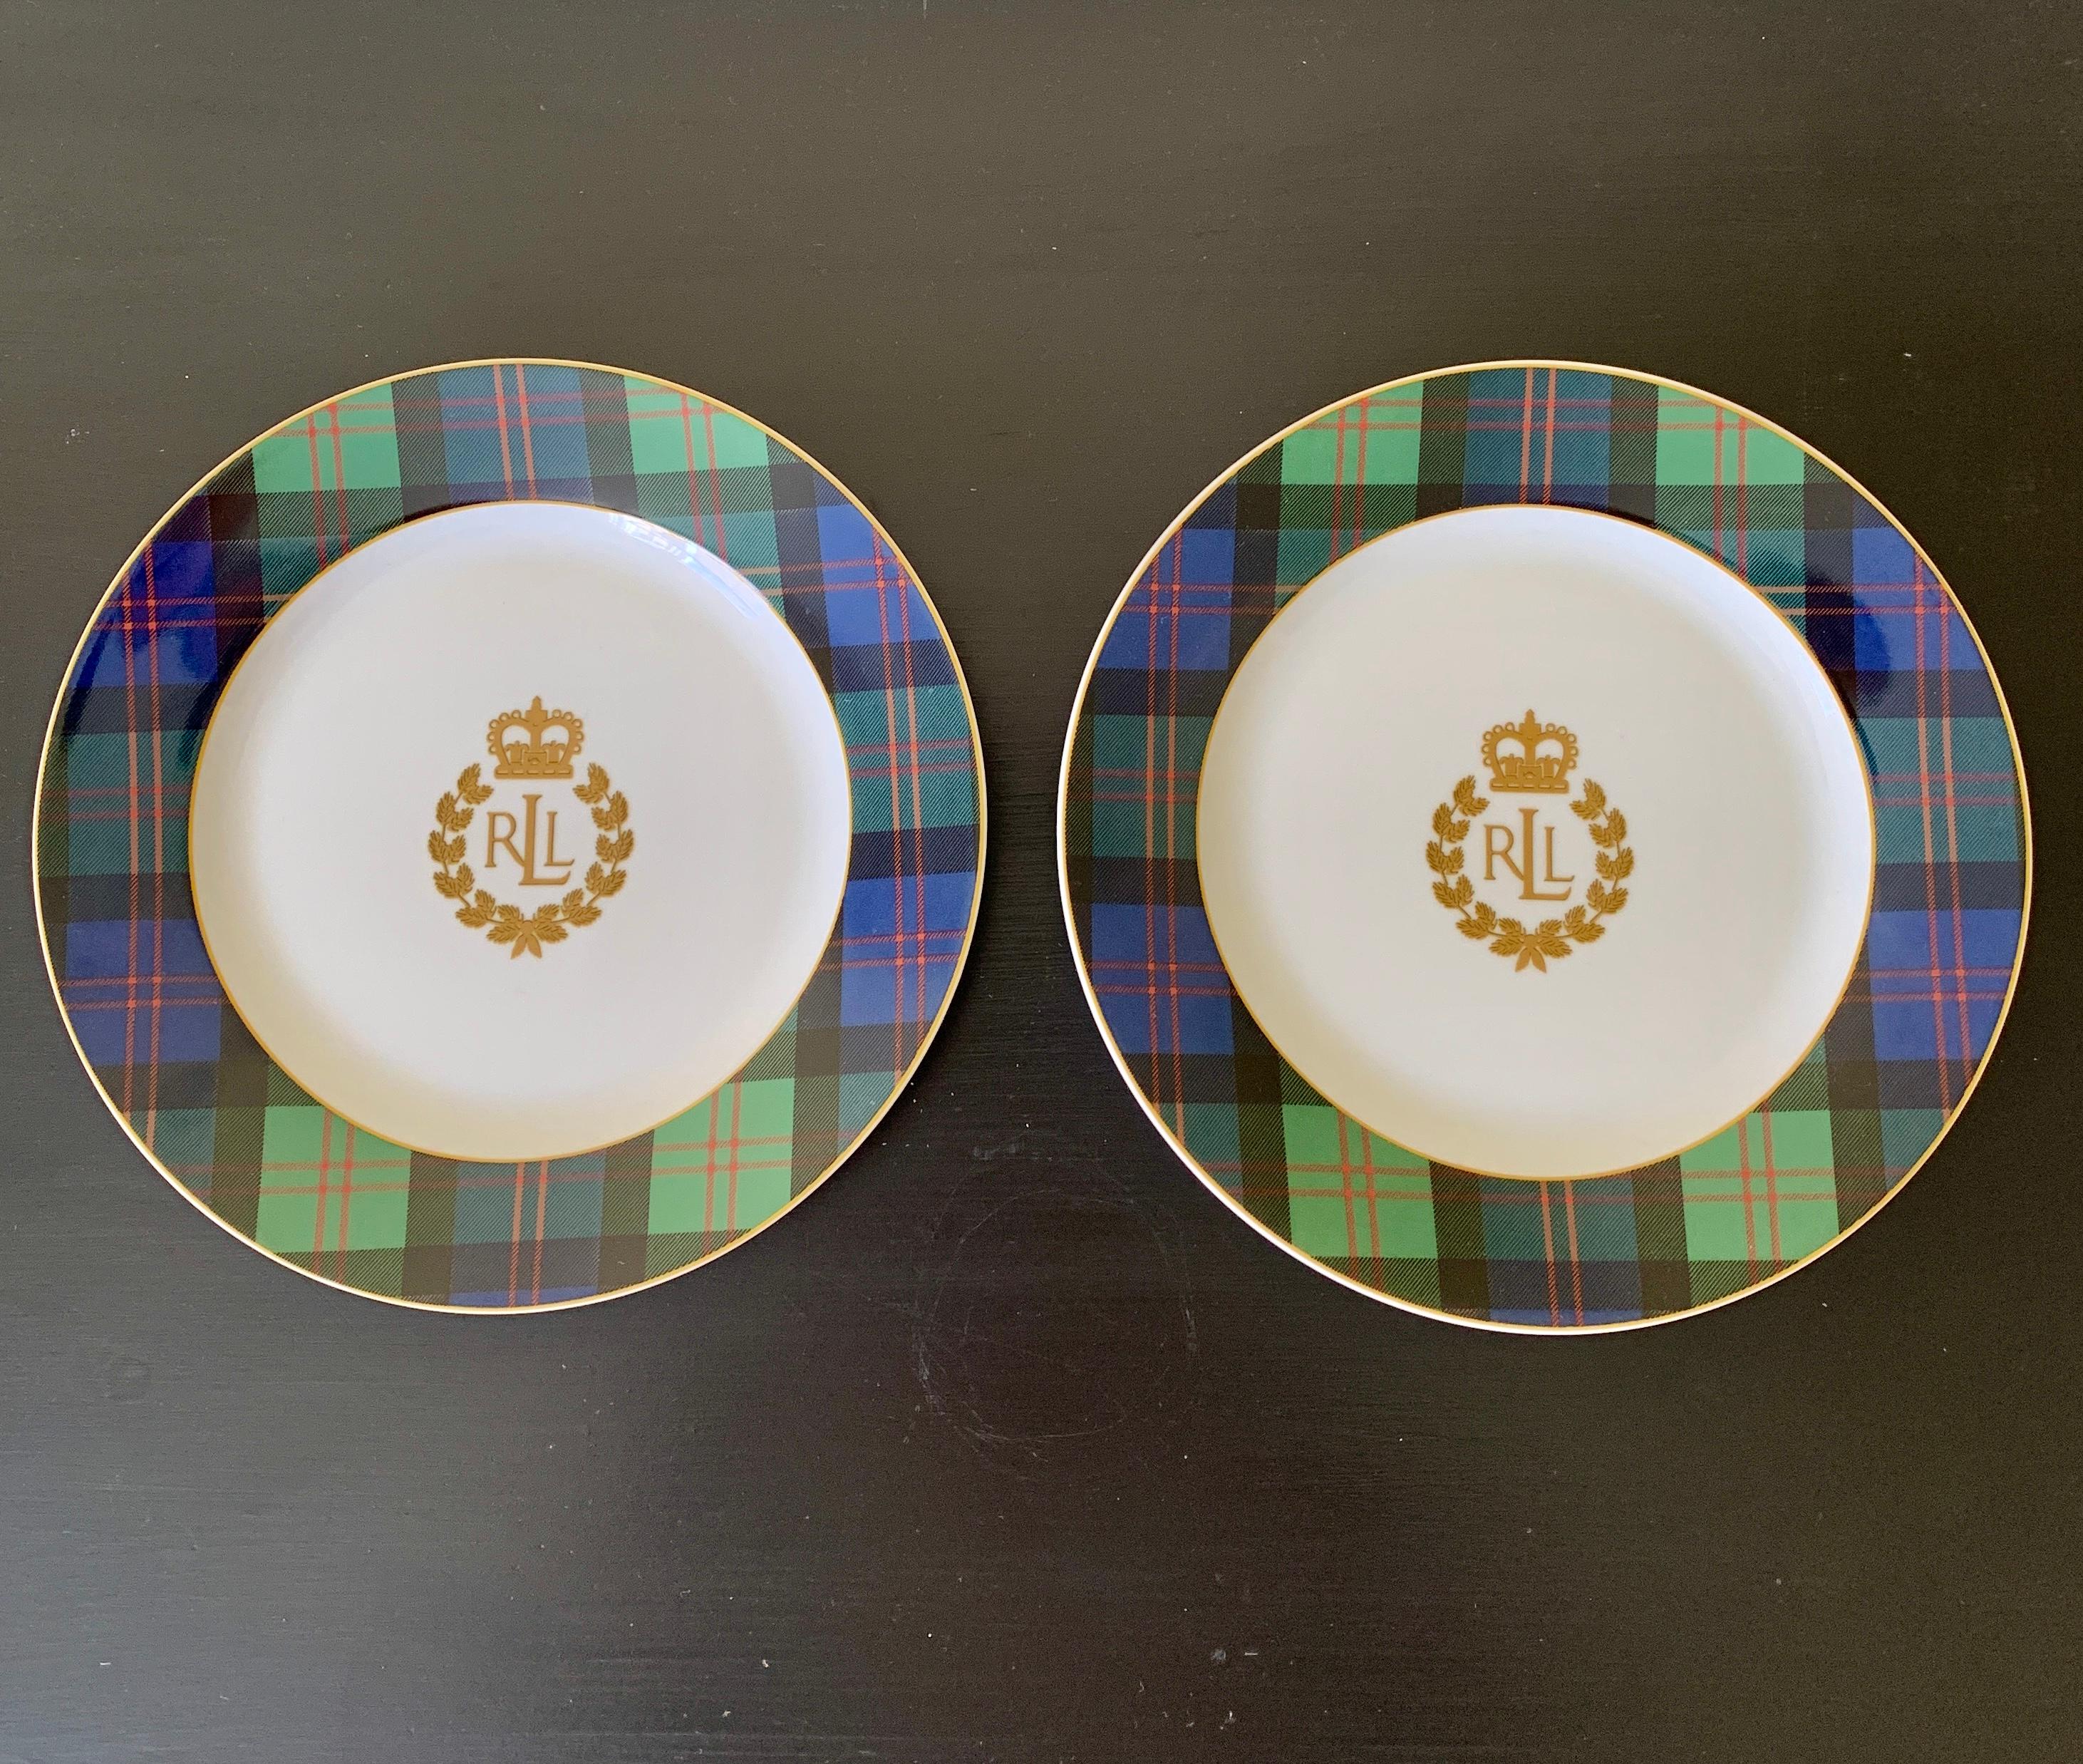 Une magnifique paire d'assiettes décoratives pour le déjeuner ou pour le mur, avec un motif écossais.

Par Ralph Lauren, motif 